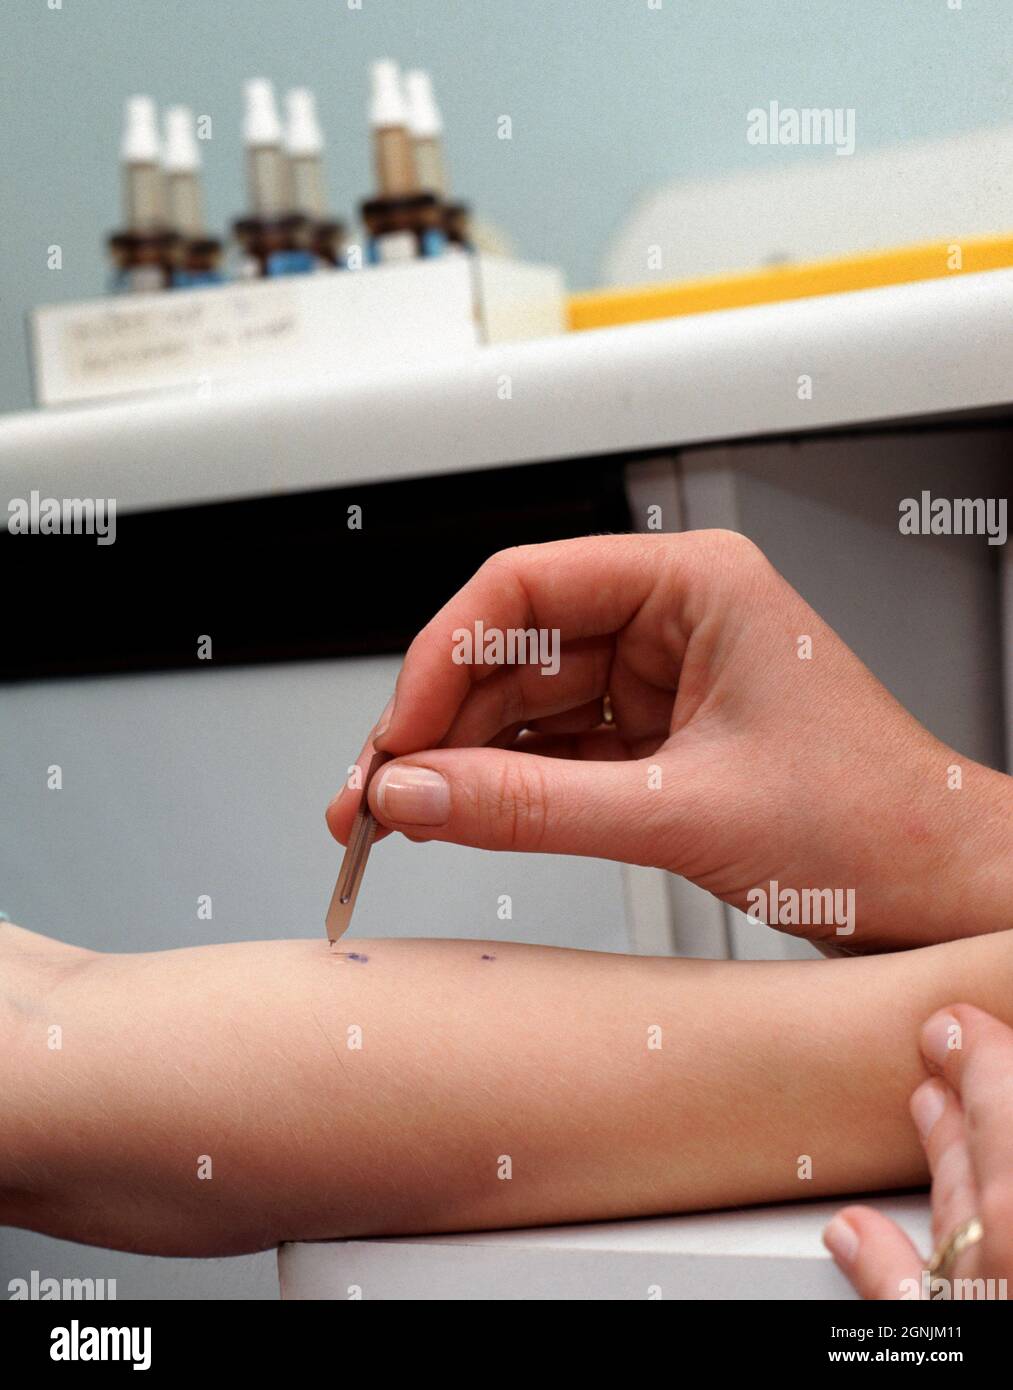 El alergista aplica cantidades diminutas de posibles extractos de alérgenos a la piel del antebrazo de un hombre joven. Foto de stock